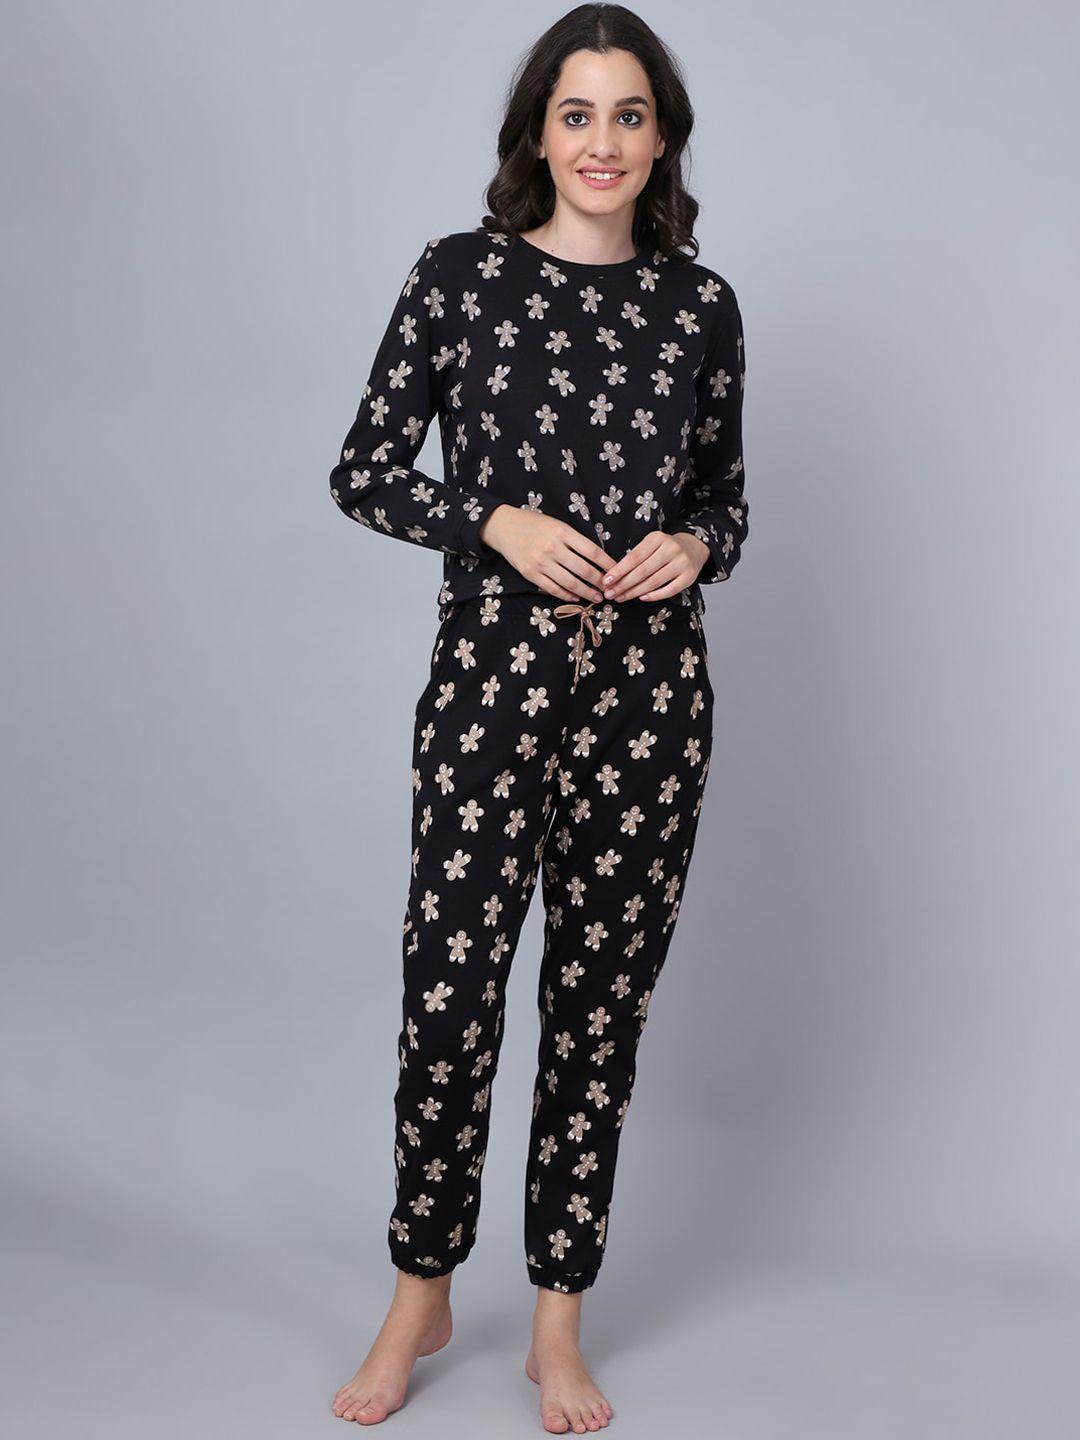 kanvin women black & cream-coloured printed night suit